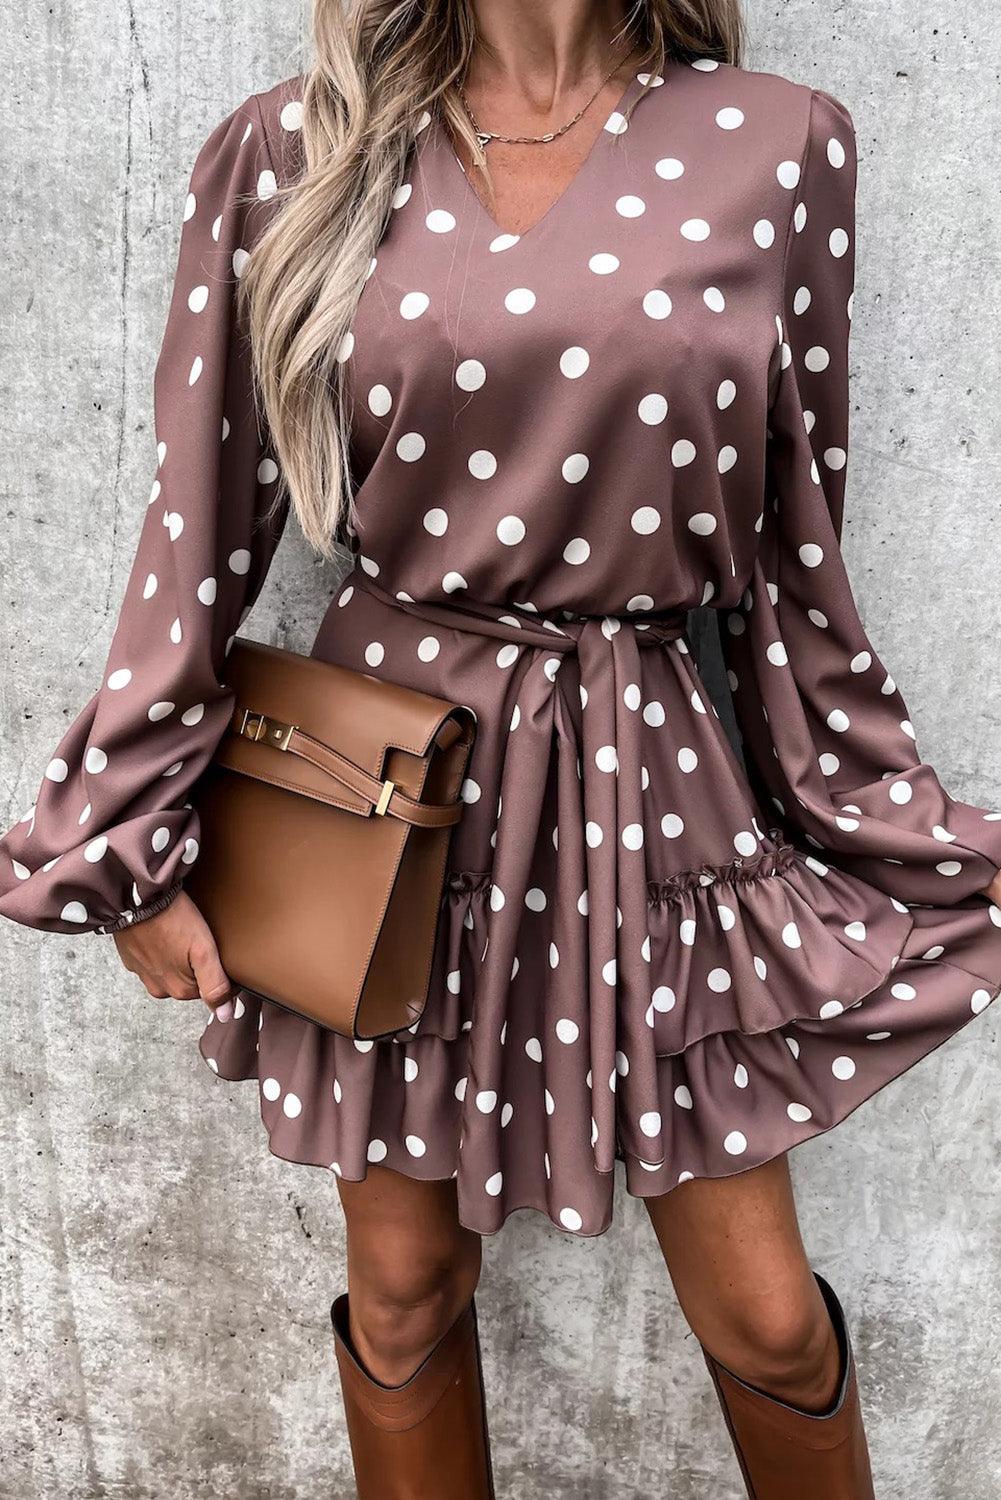 Polka Dot Print Lace-up Ruffled Mini Dress - L & M Kee, LLC